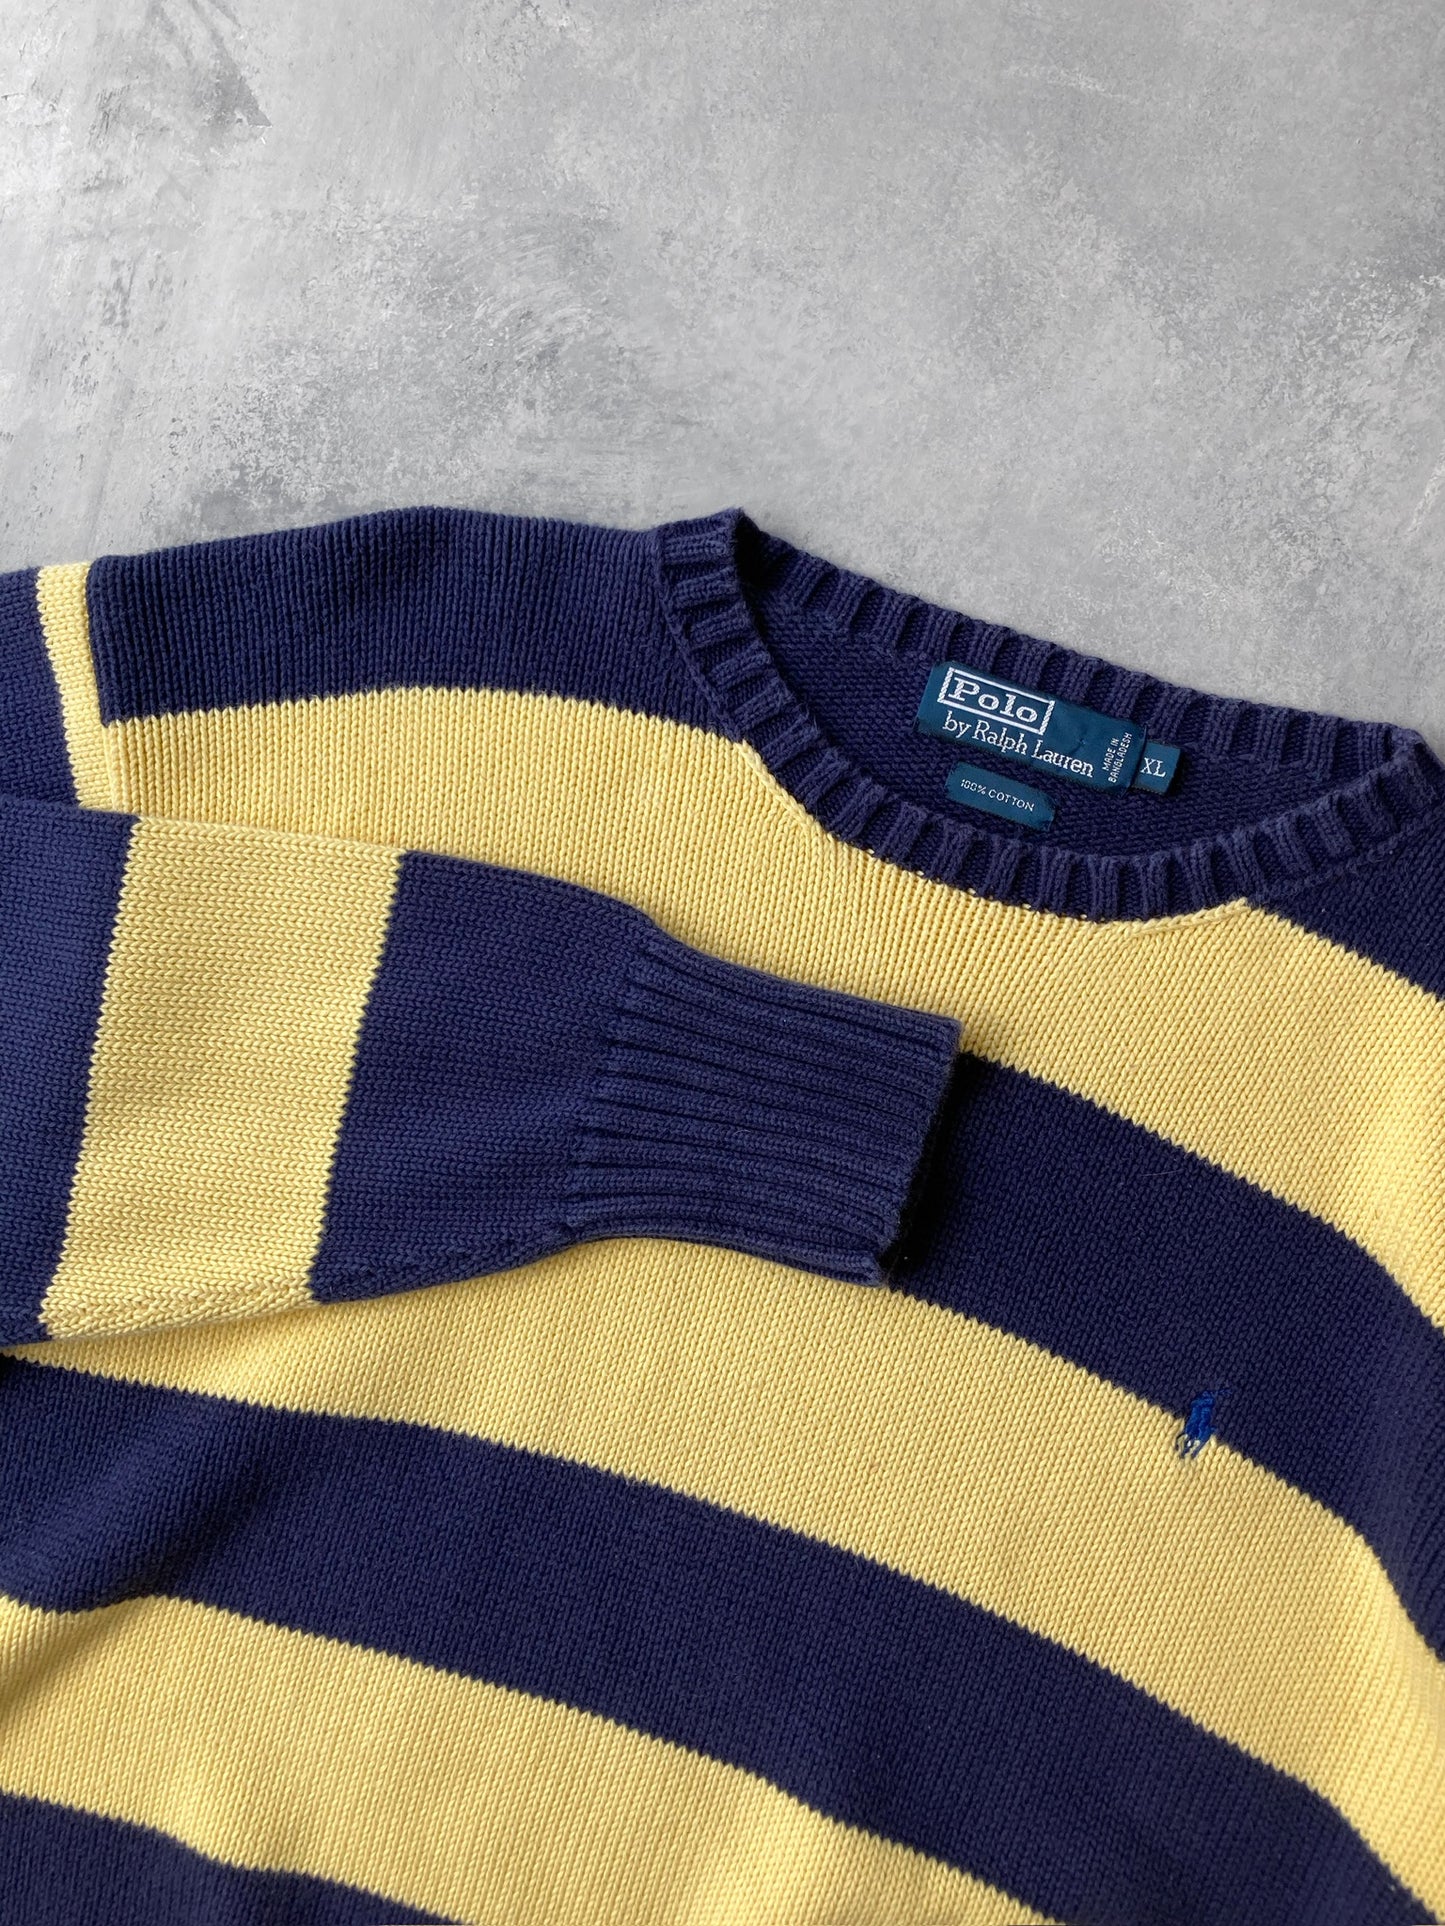 Polo Ralph Lauren Sweater 90's - XL